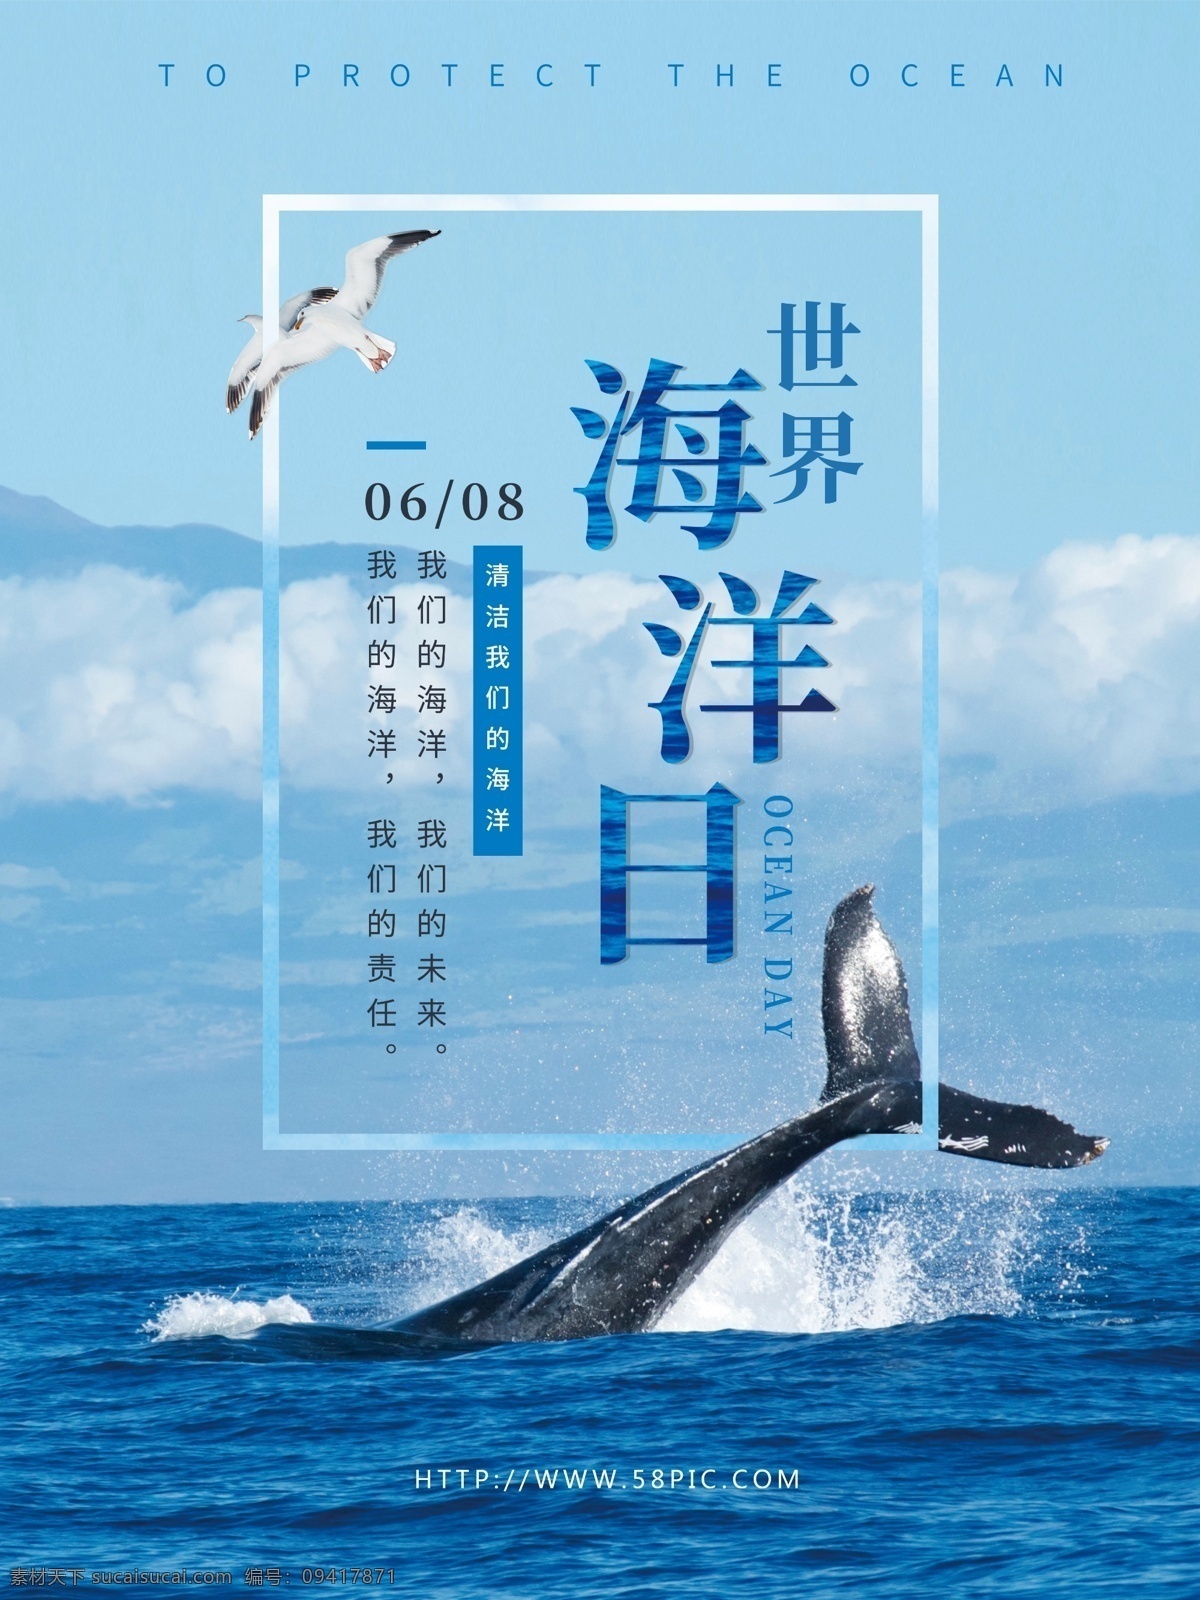 月 日 世界 海洋 公益 展板 海报 环保 大海 清新 保护海洋环境 海洋日 世界海洋日 环境 社区 宣传 海豚 海鸥 蓝色调 蓝白 活动